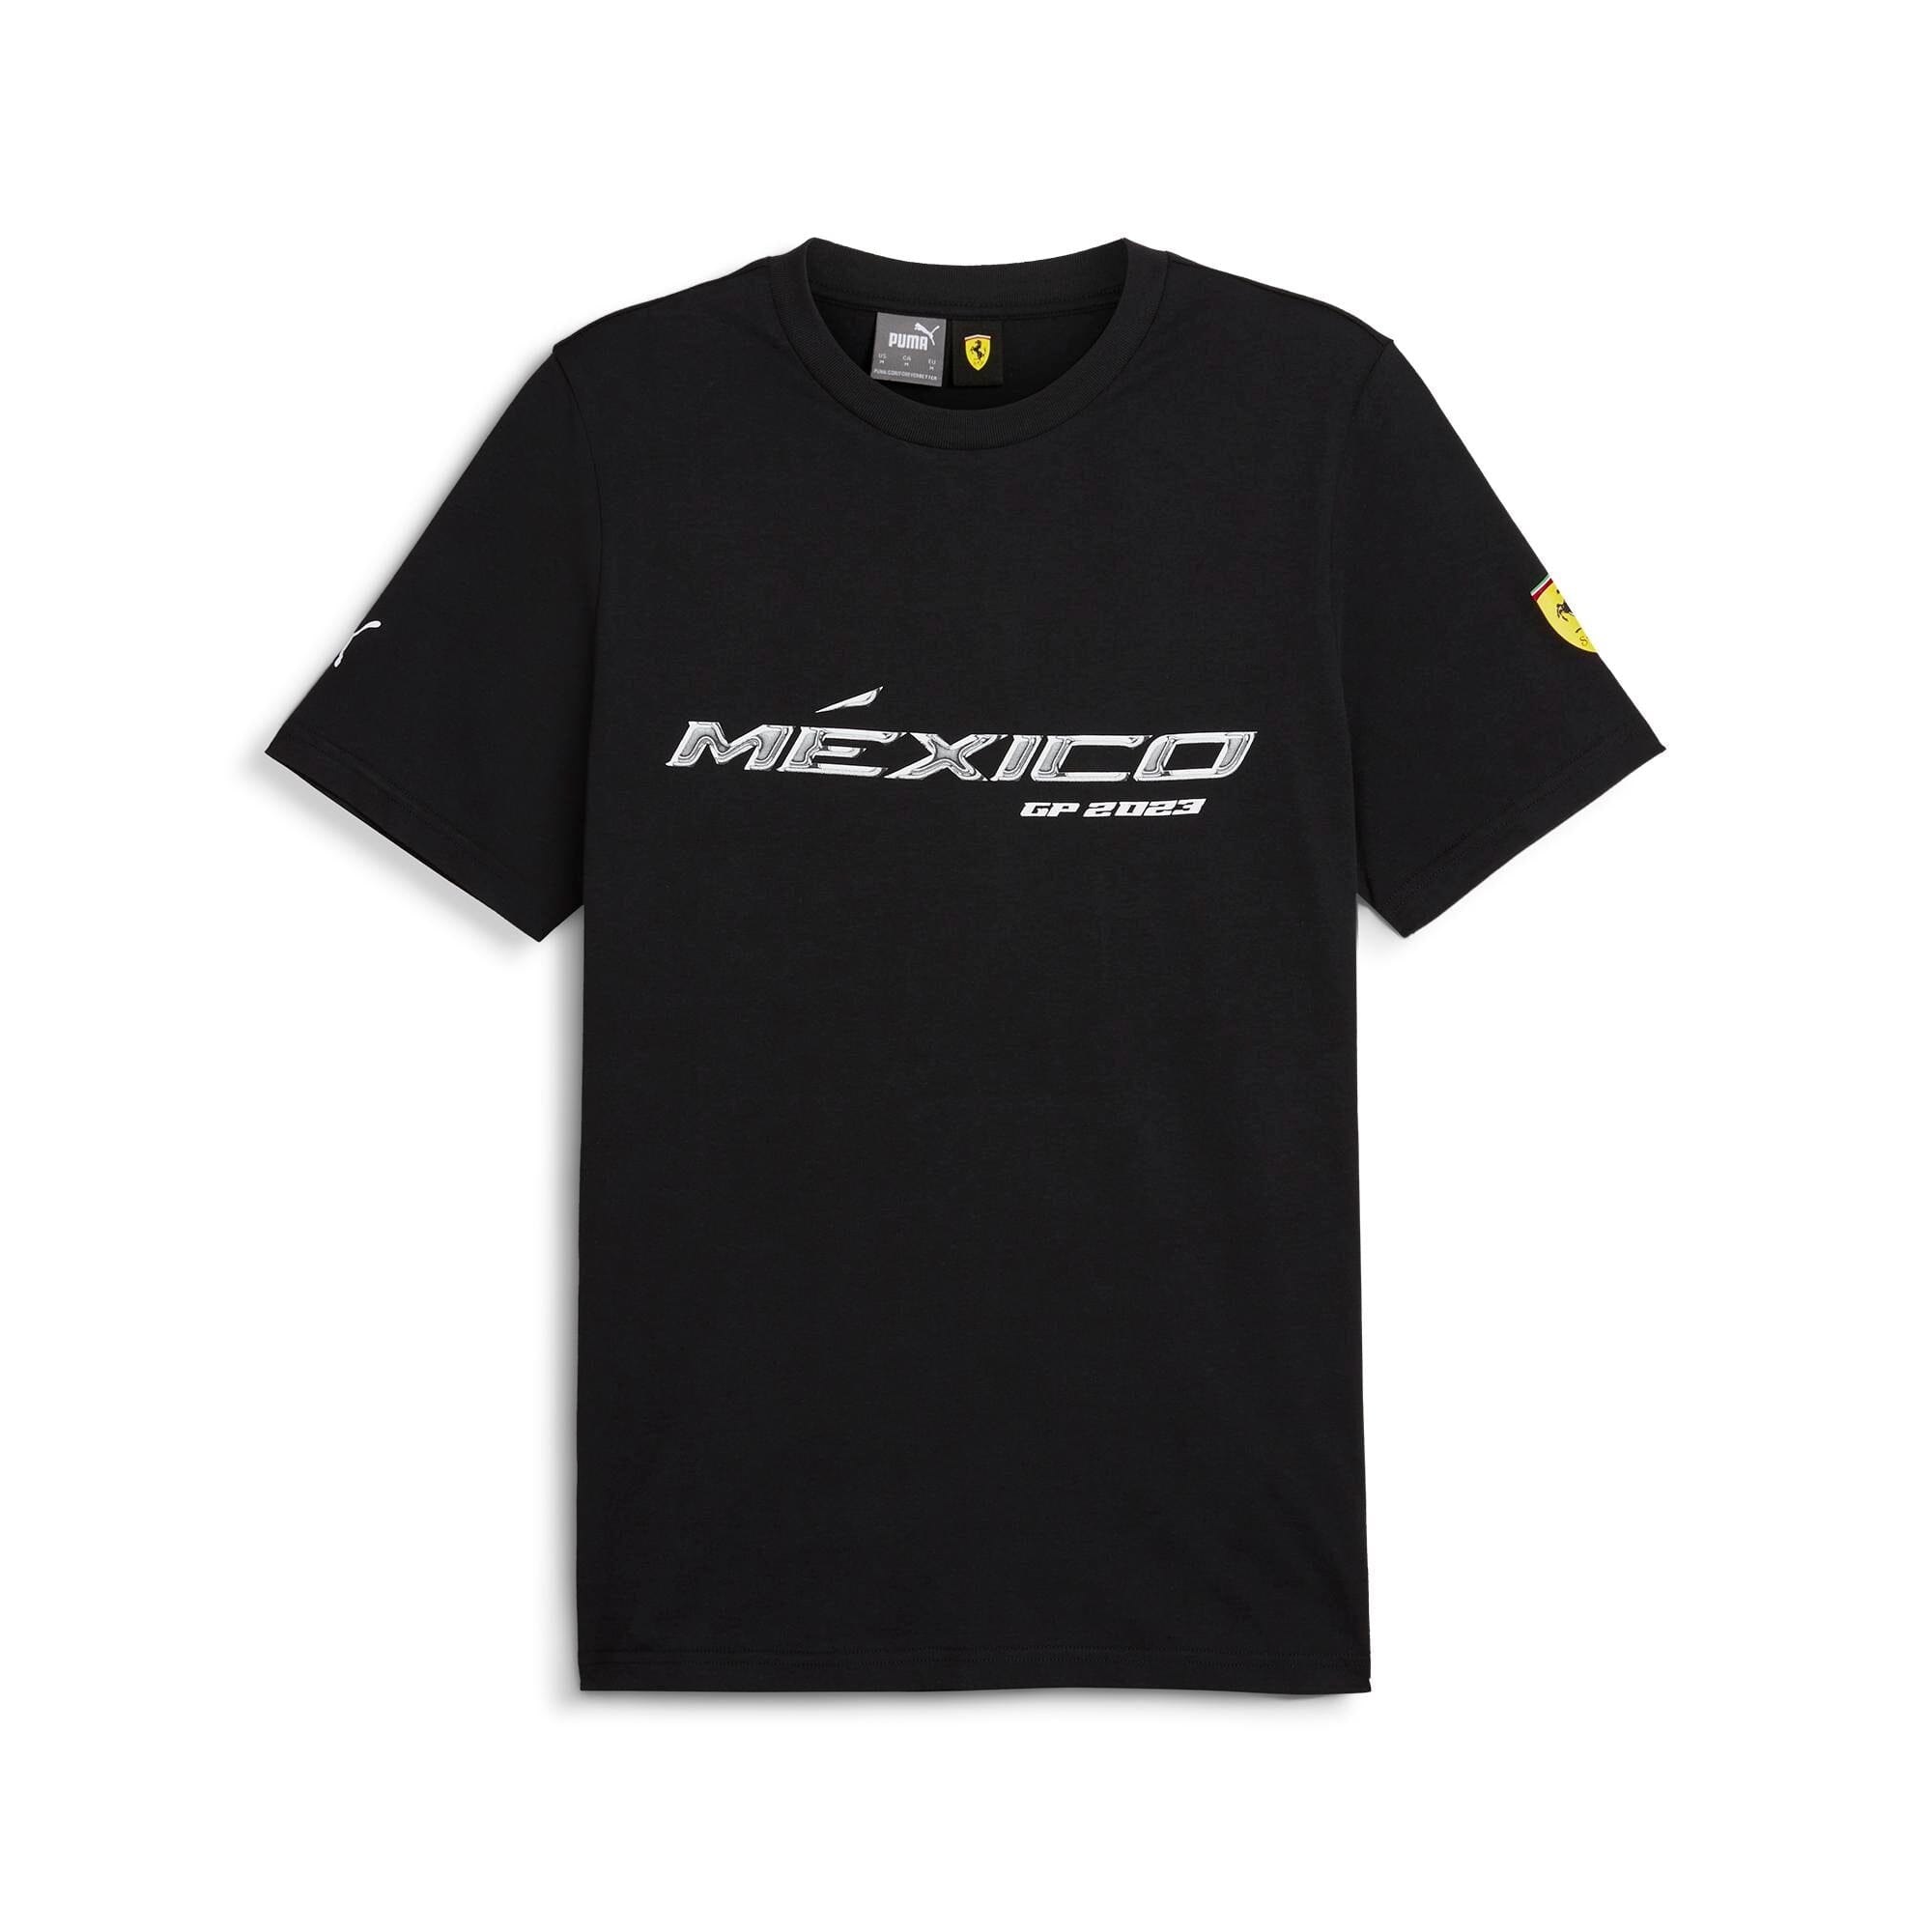 Scuderia Ferrari F1 Special Edition Mexico GP T-Shirt - Black